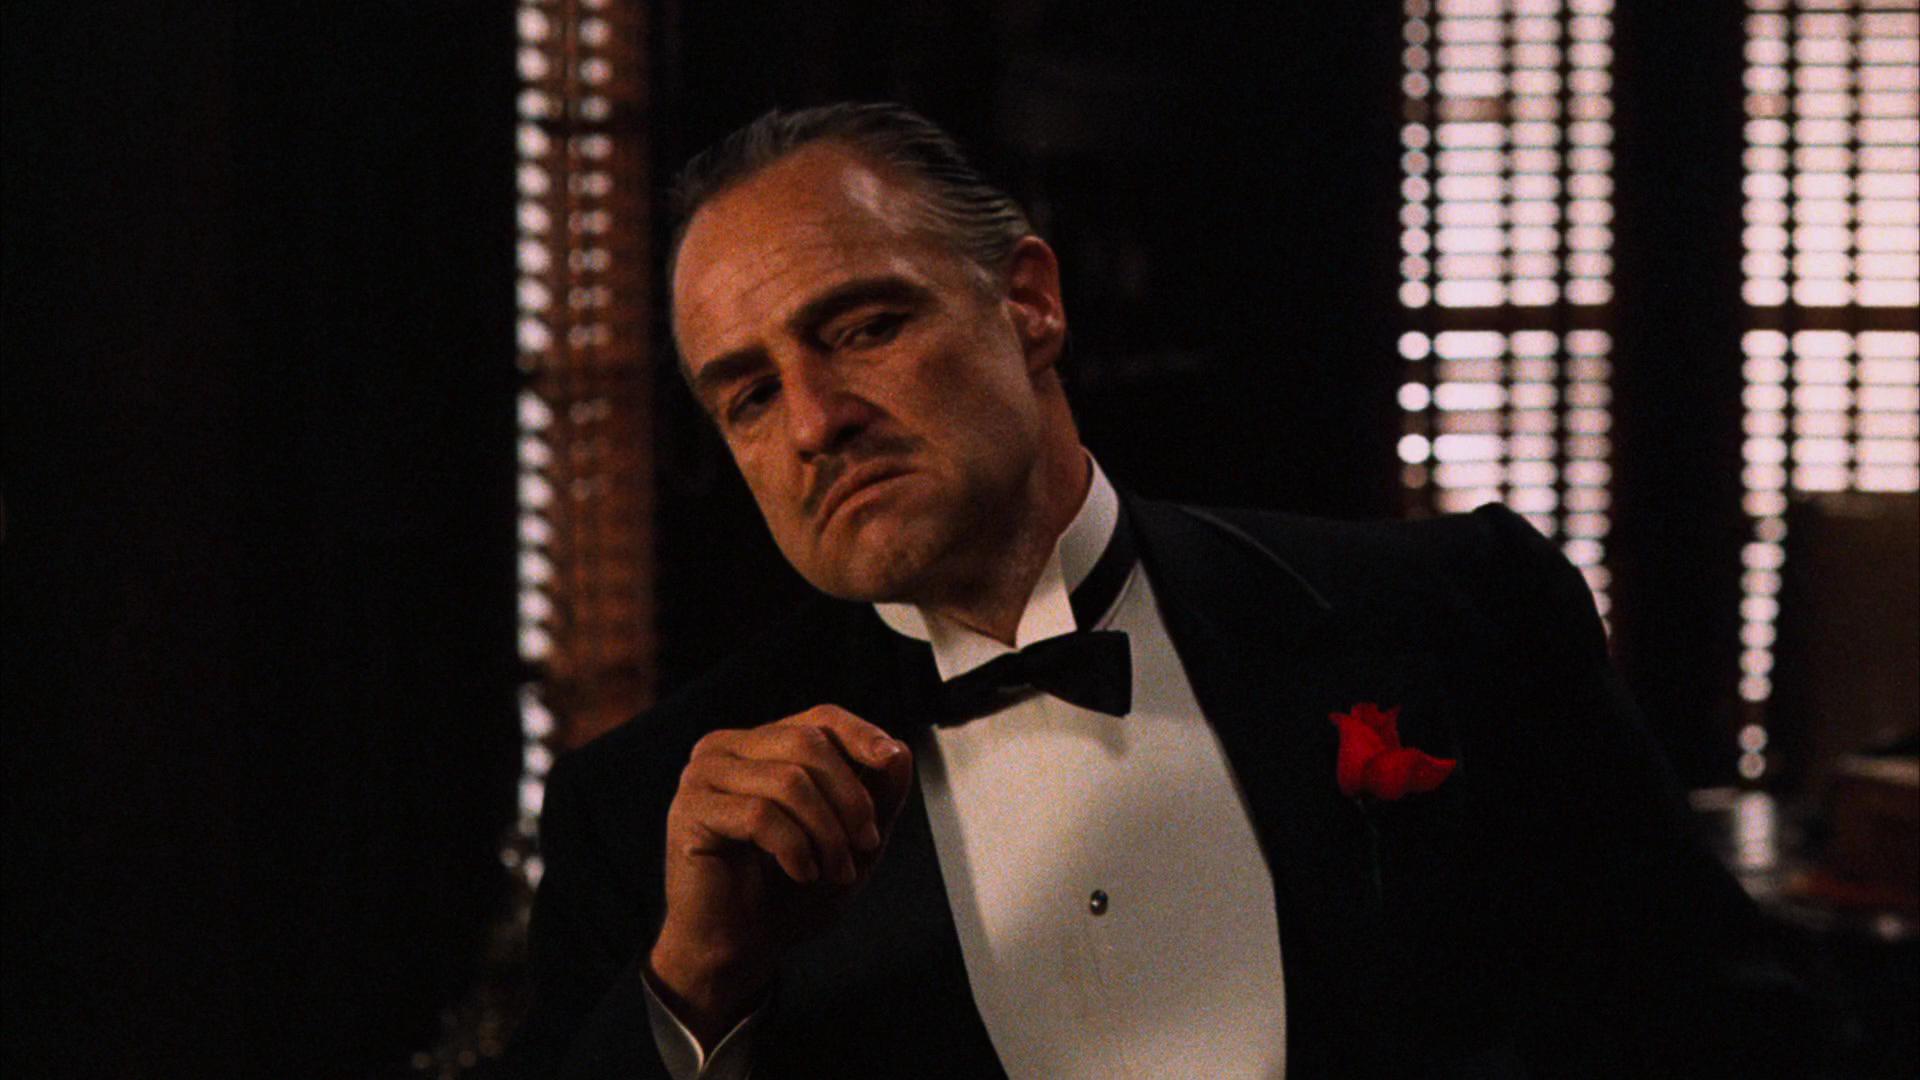 The Godfather (1972) - Marlon Brando as Don Vito Corleone